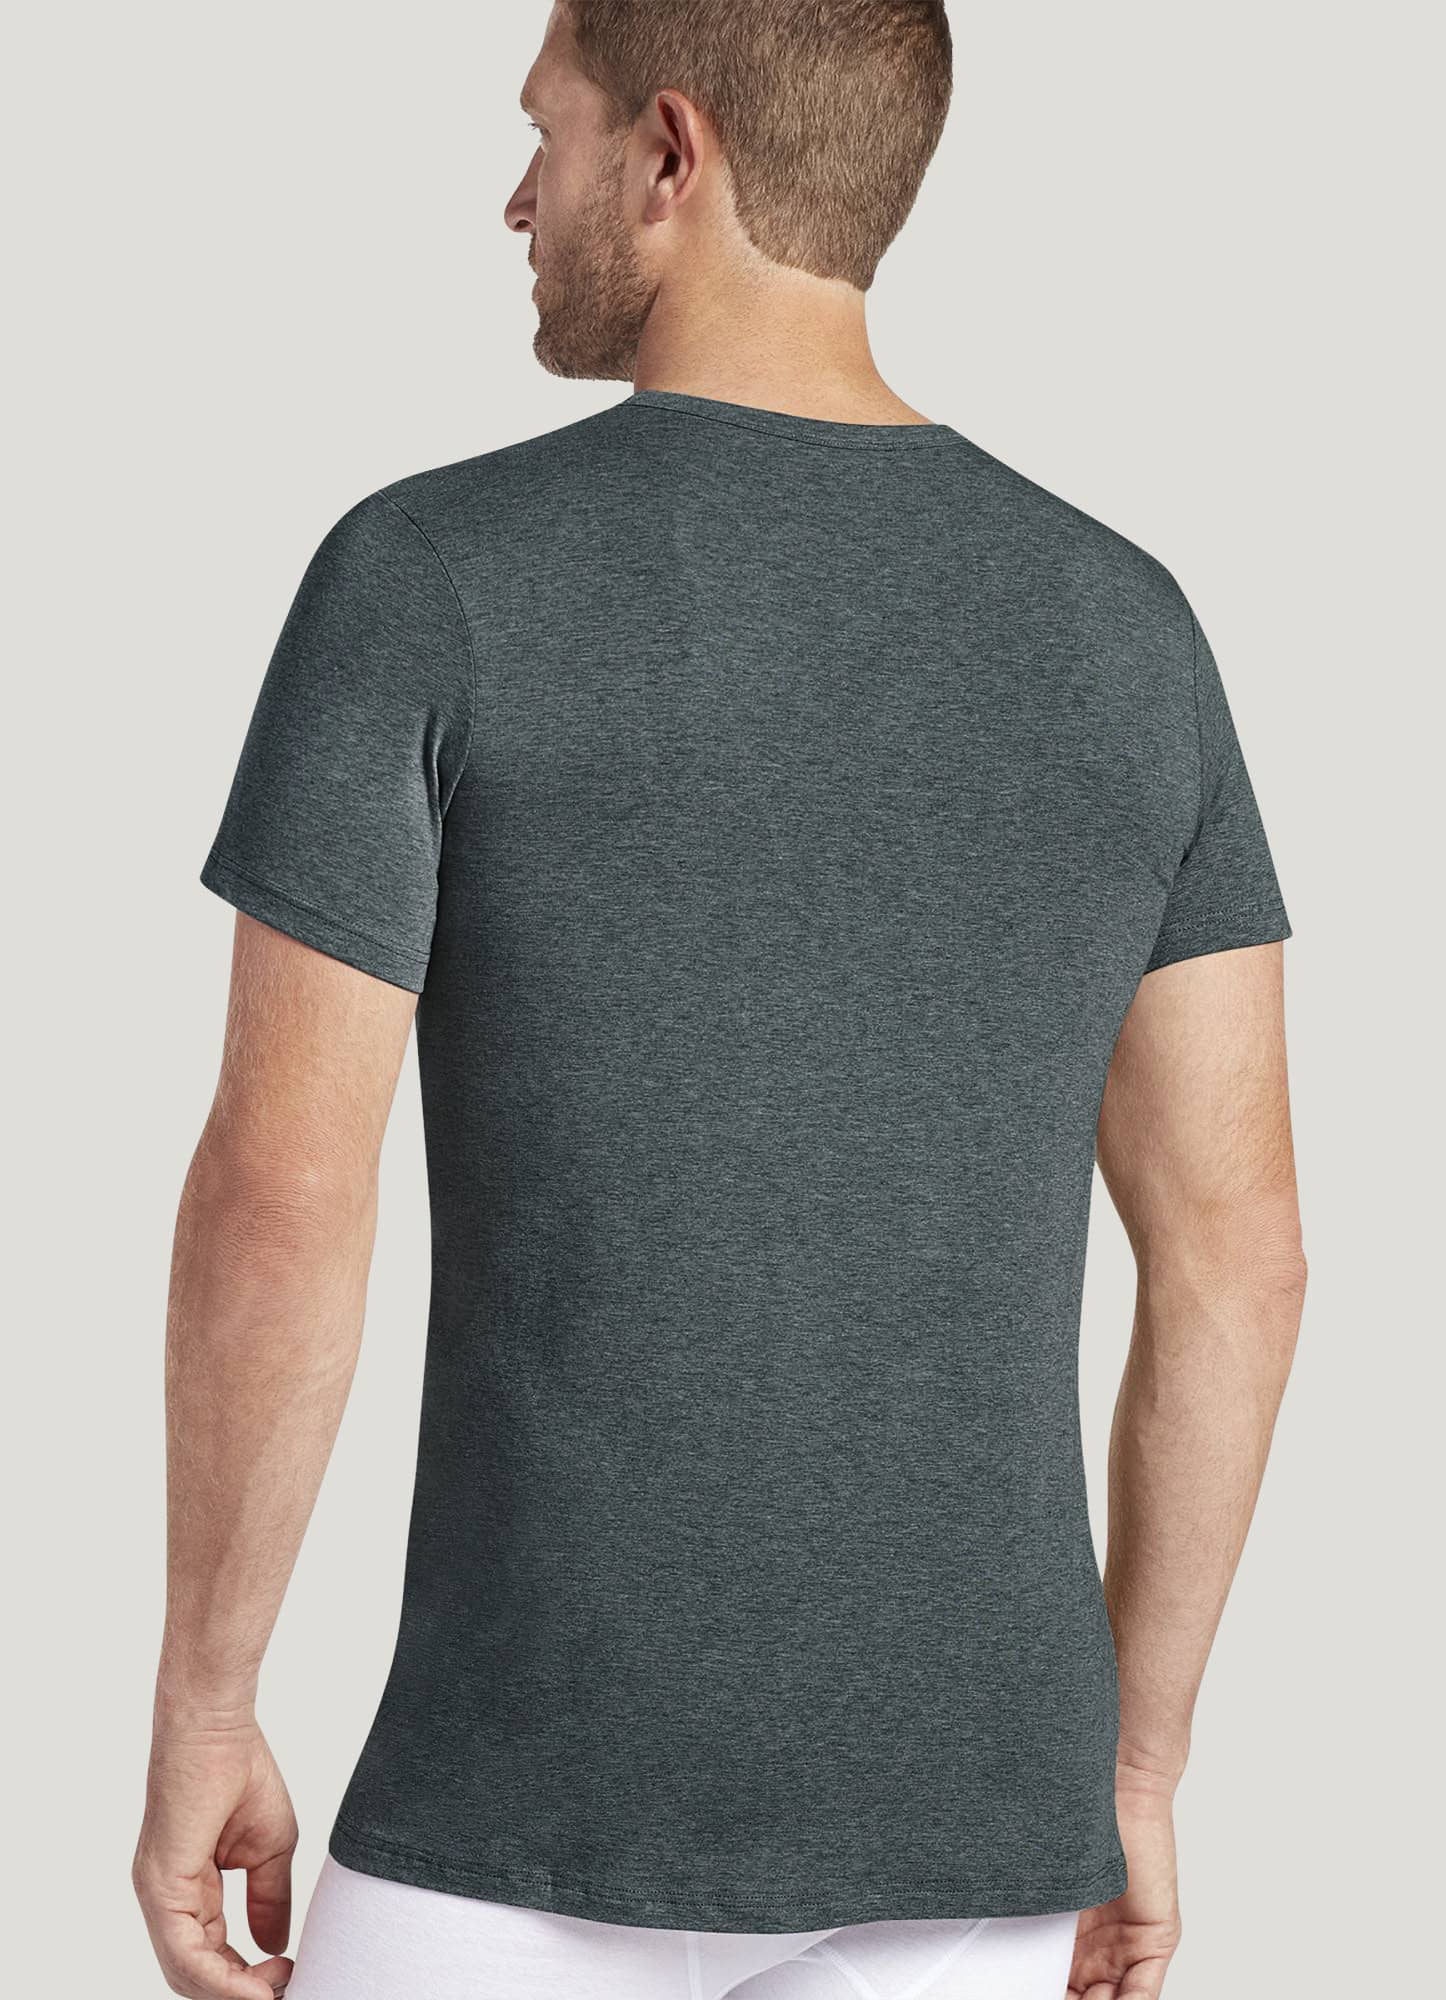 Modern fit round neck T-shirt  Buy Mens & Kids Innerwear